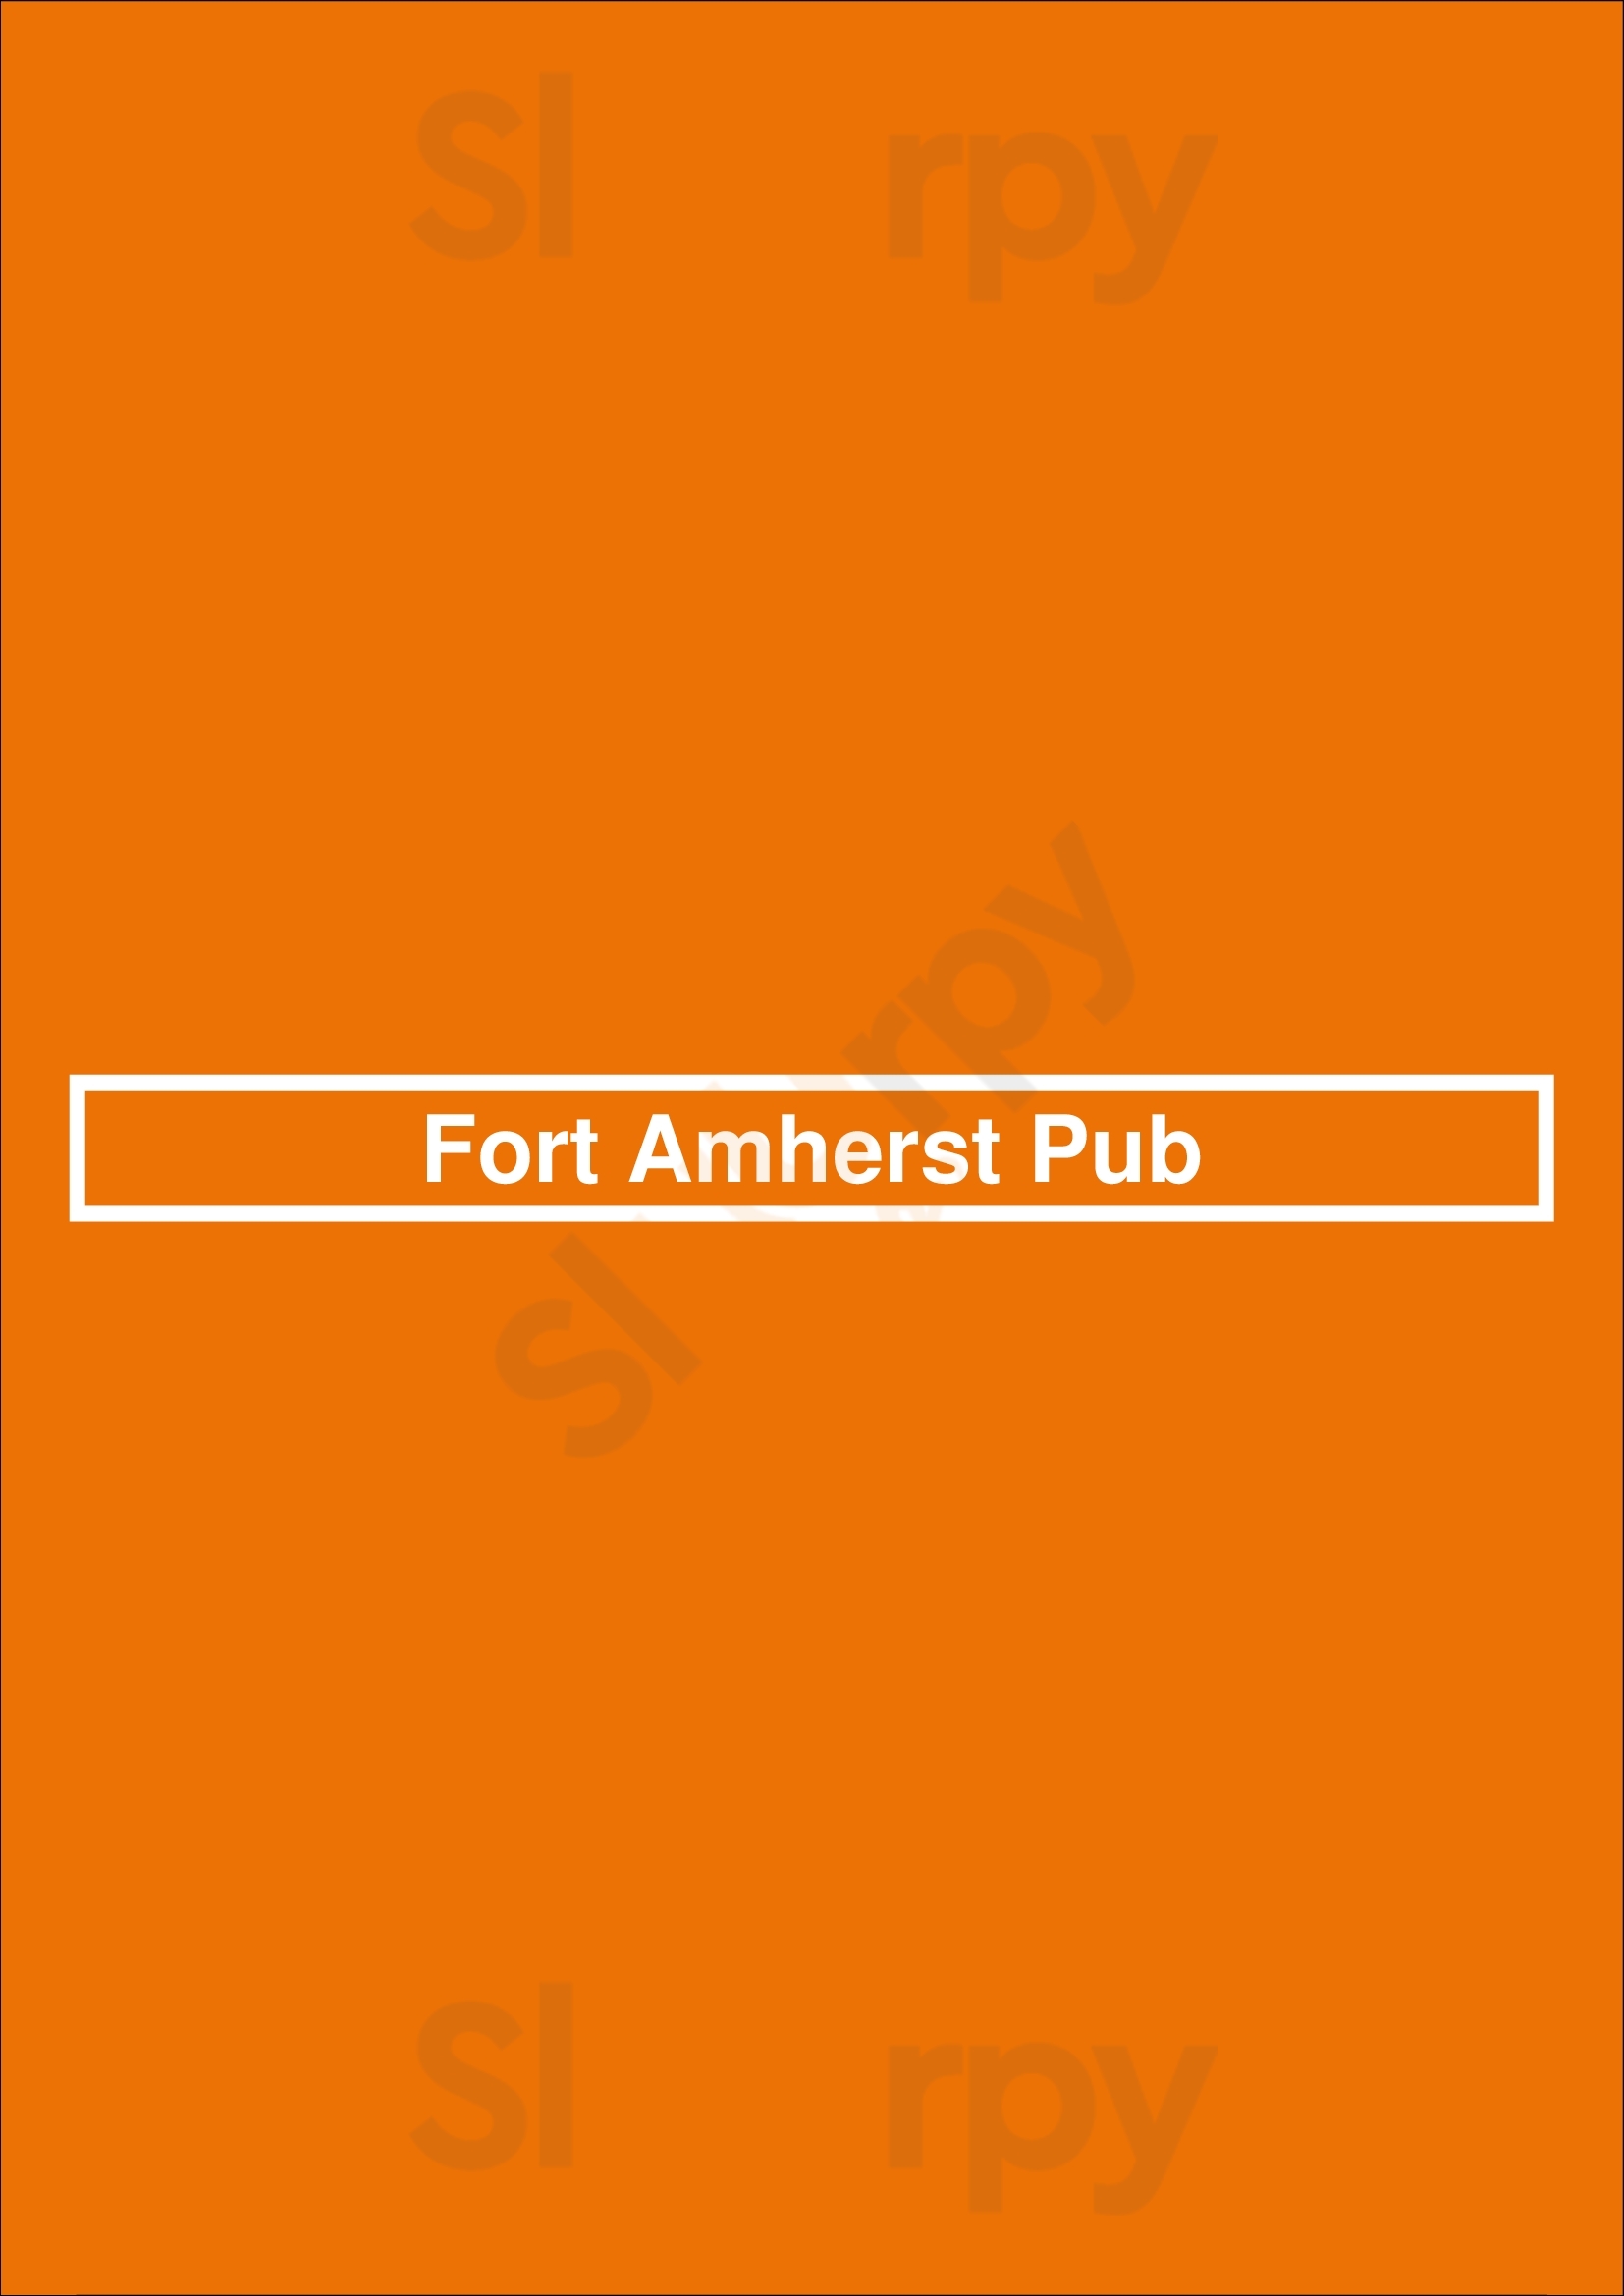 Fort Amherst Pub St. John's Menu - 1